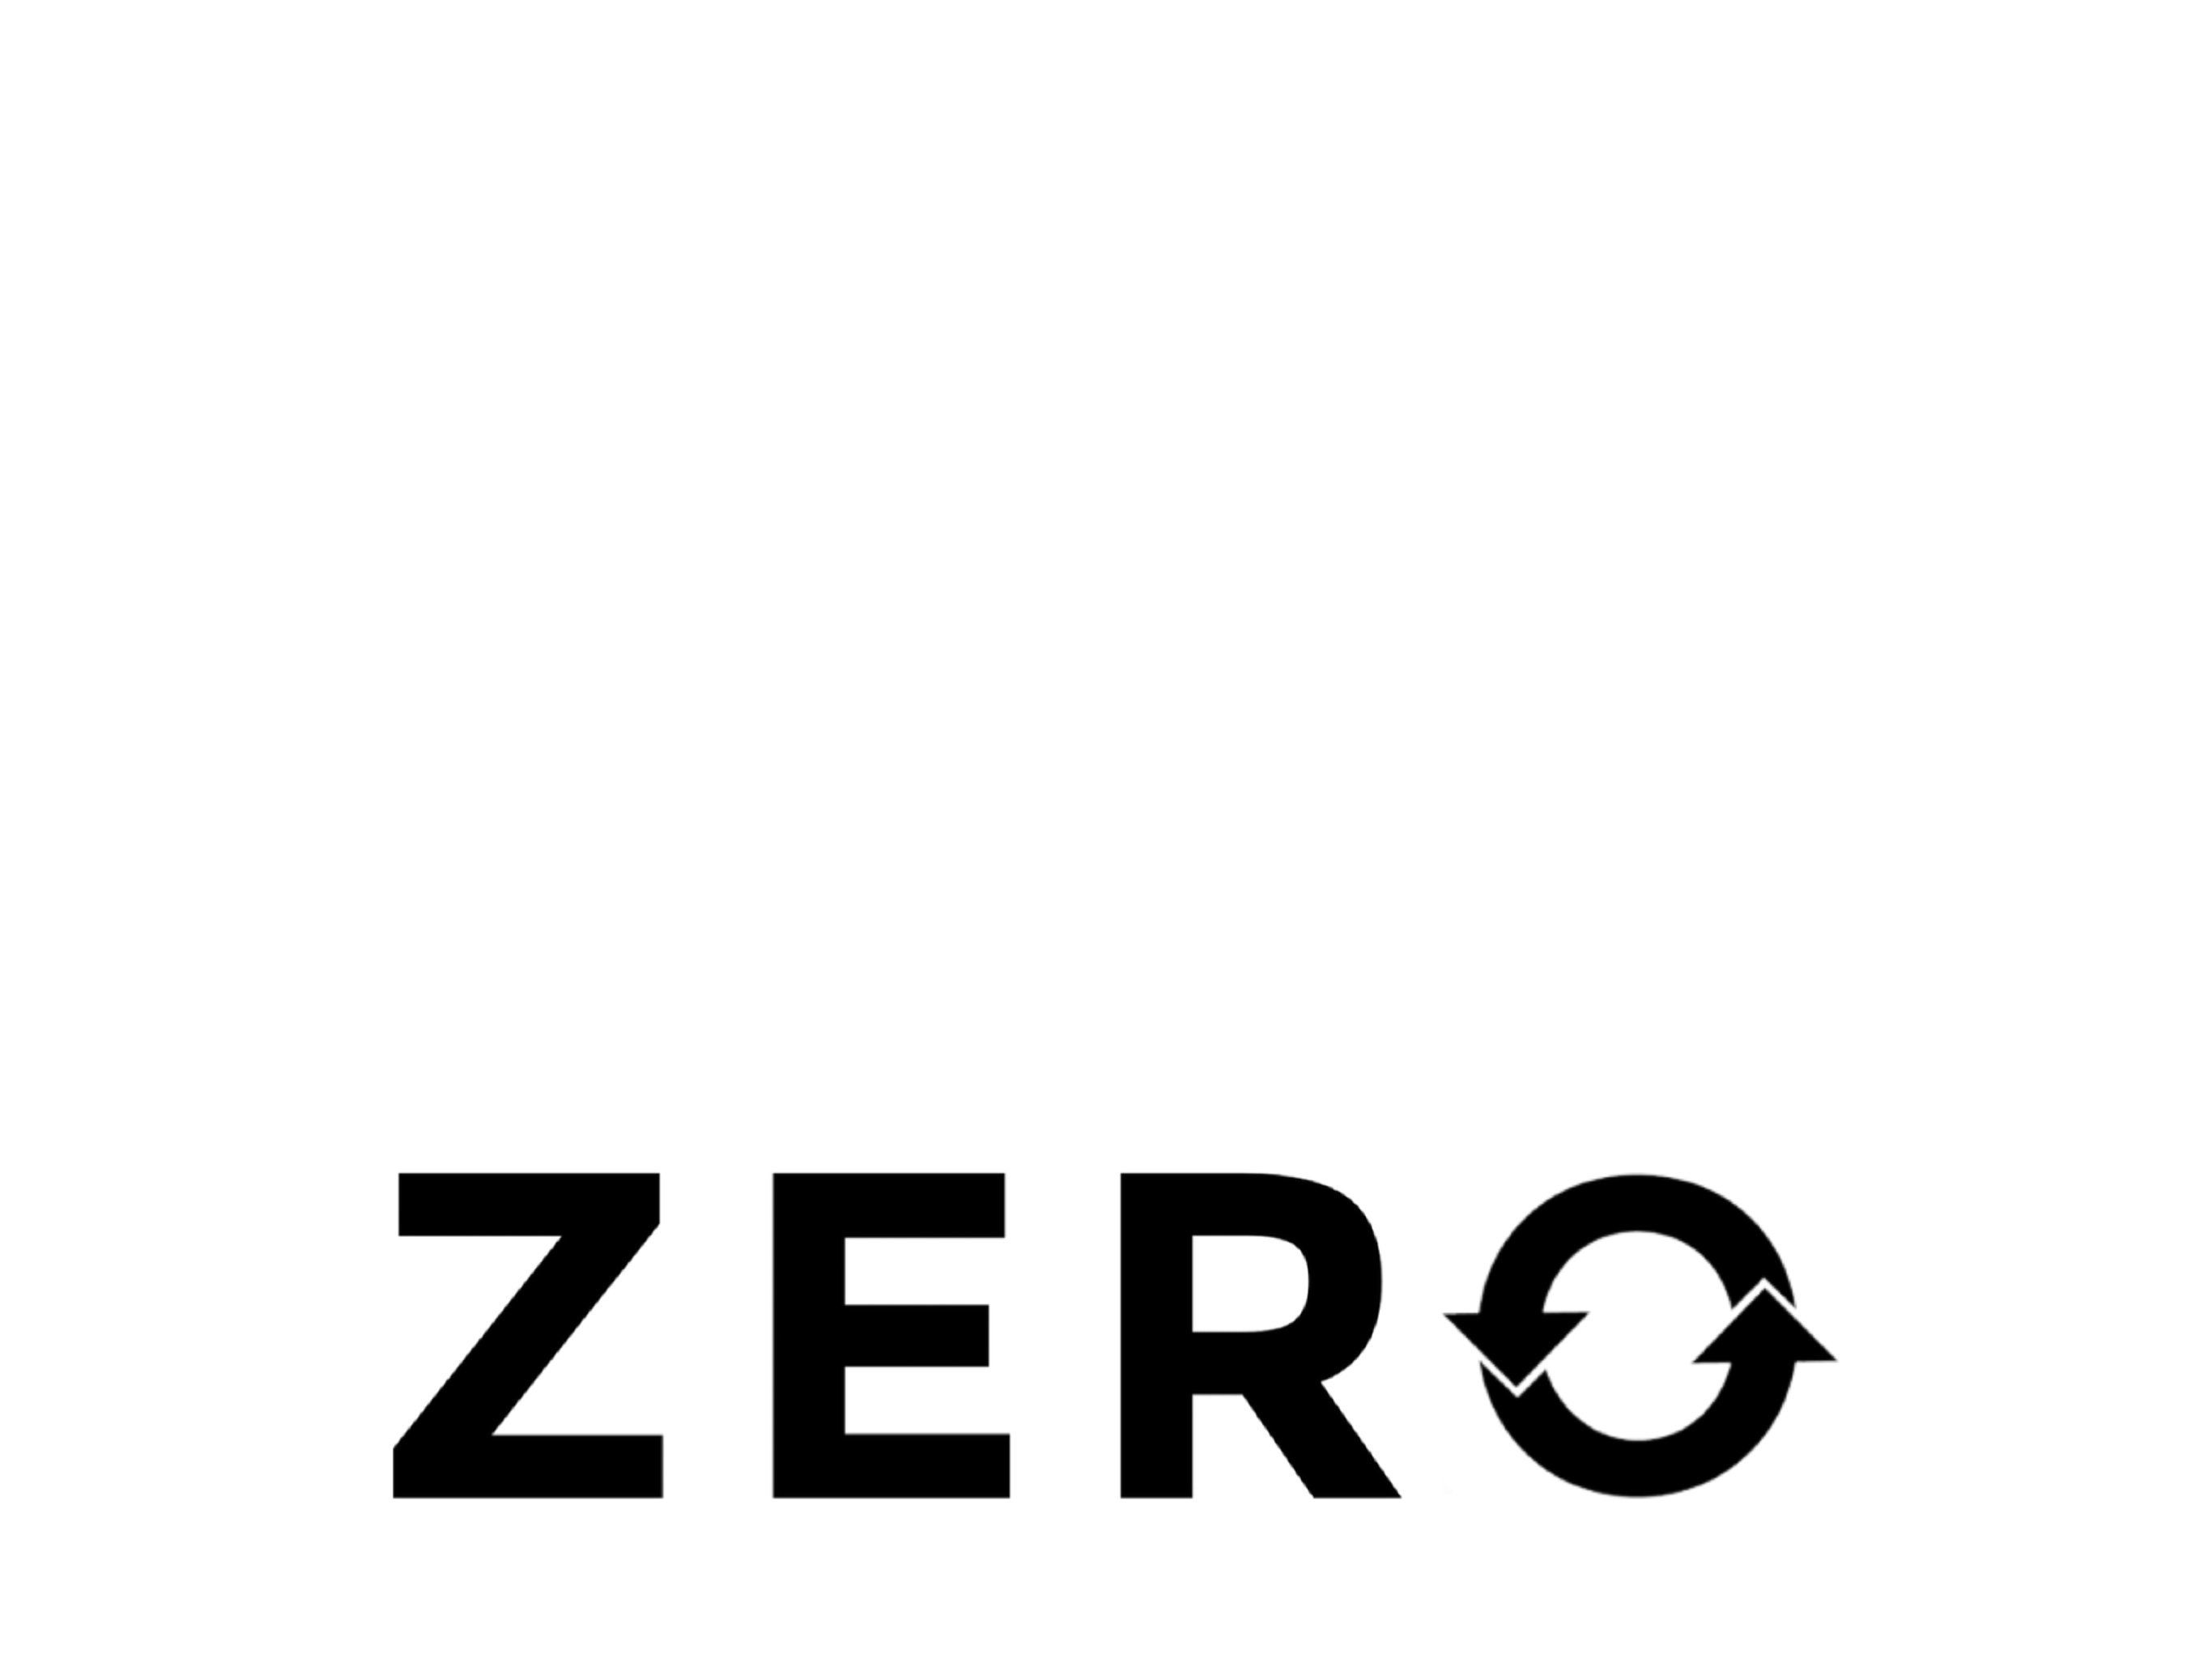 Companies for Net Zero